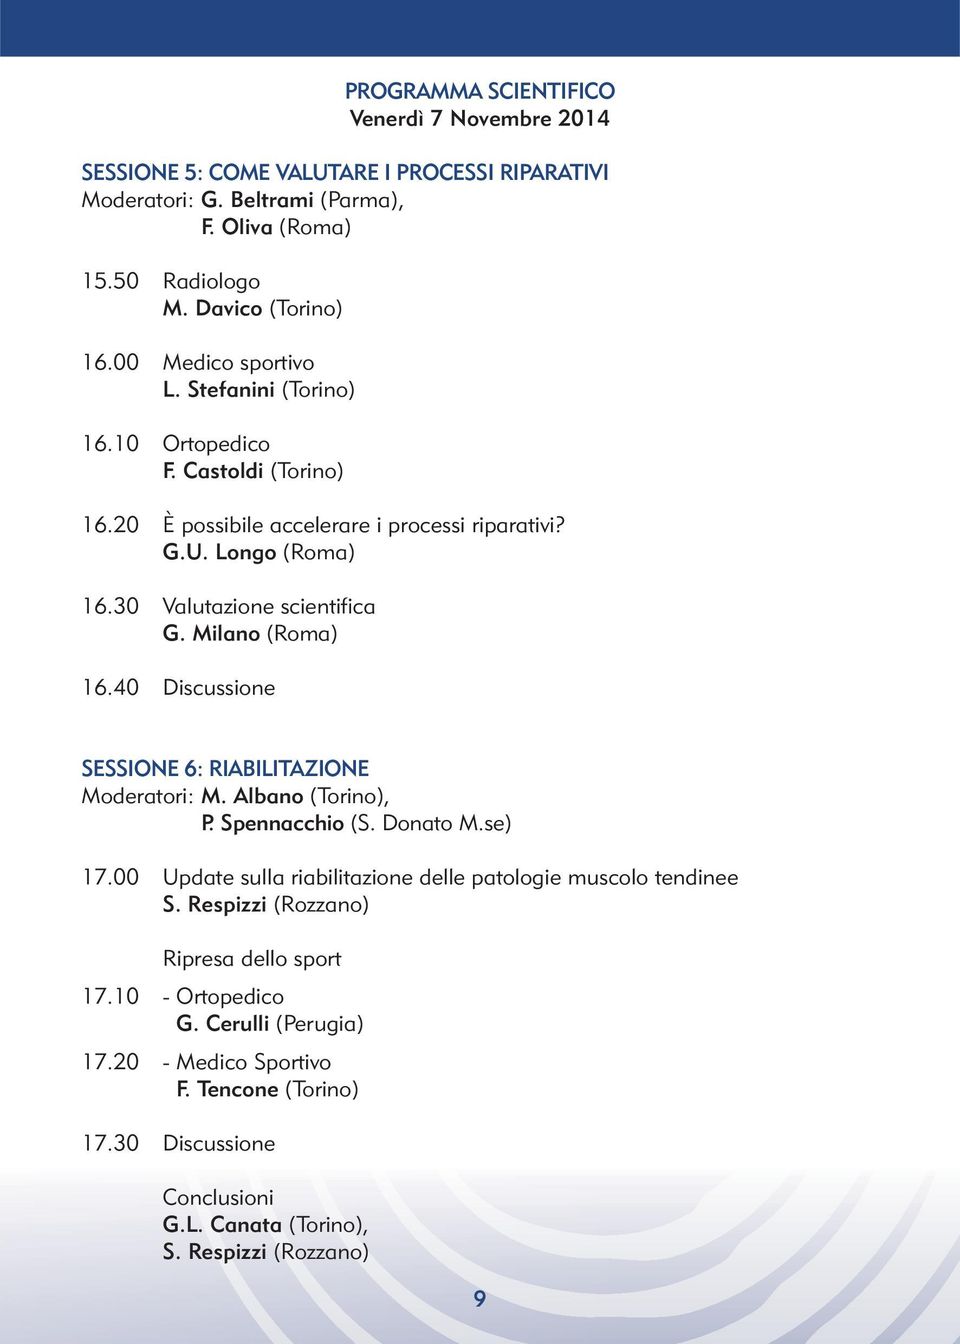 Milano (Roma) 16.40 Discussione SESSIONE 6: RIABILITAZIONE Moderatori: M. Albano (Torino), P. Spennacchio (S. Donato M.se) 17.